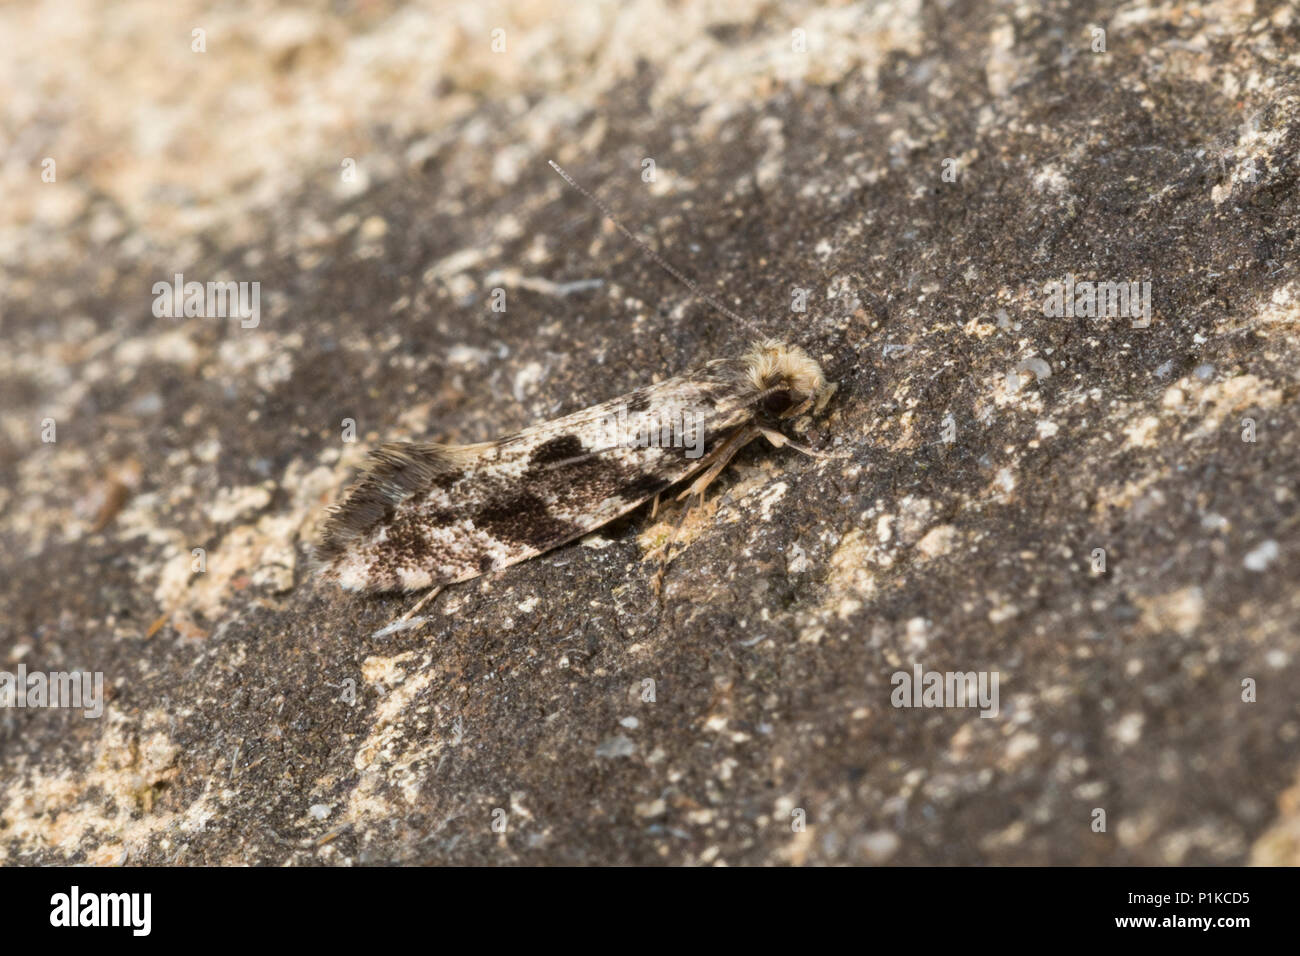 Motte, Nemapogon spec., tineoid moth, Tineidae, Echte Motten, tineoid moths Stock Photo